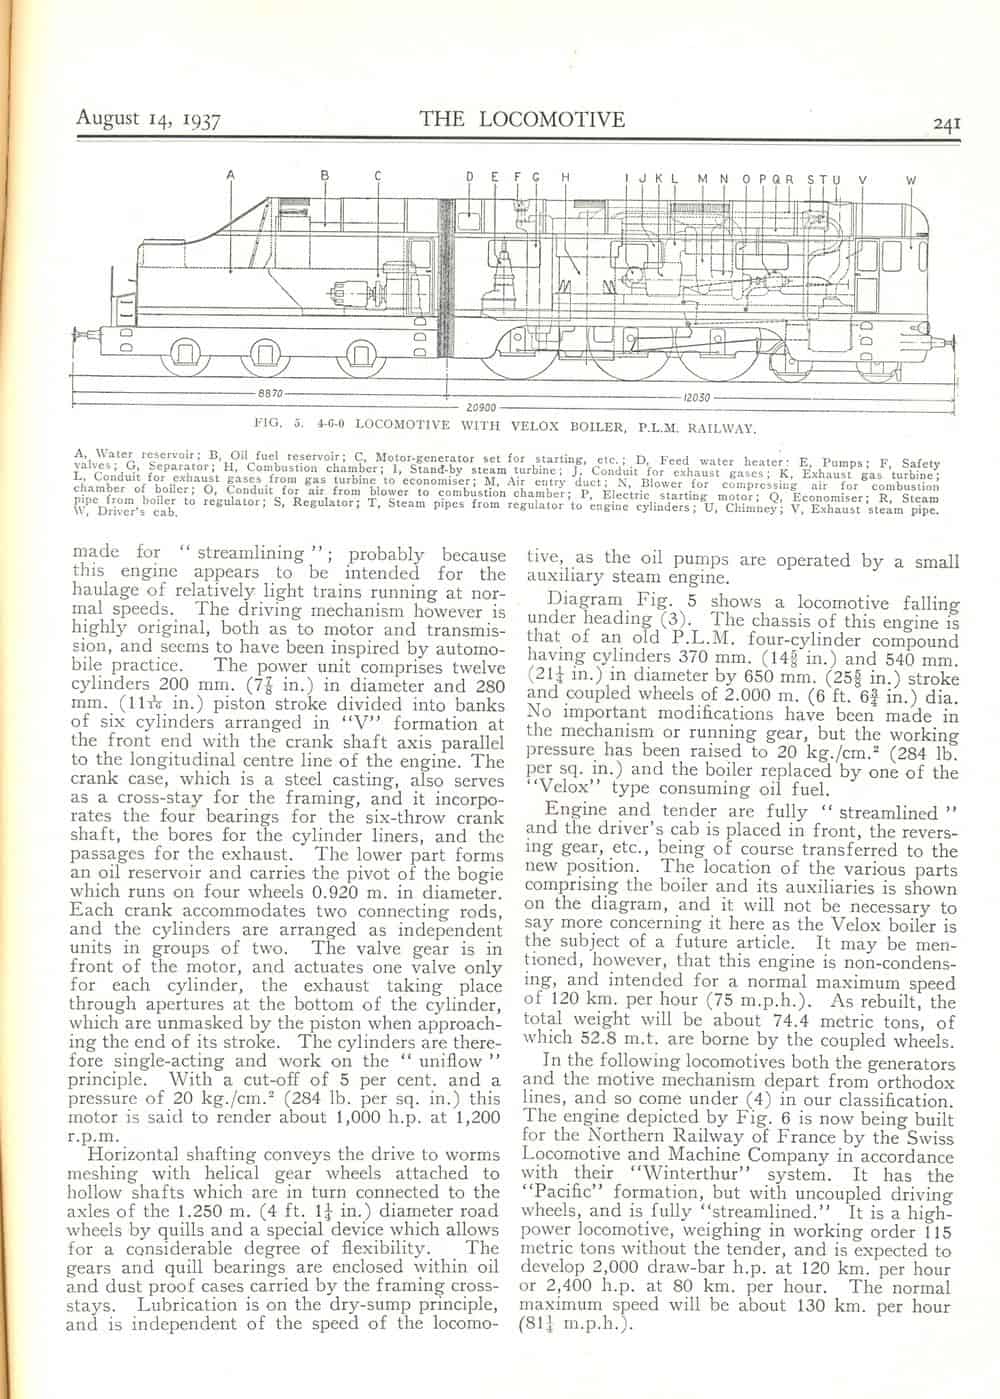 Locomotive Magazine v43 p240